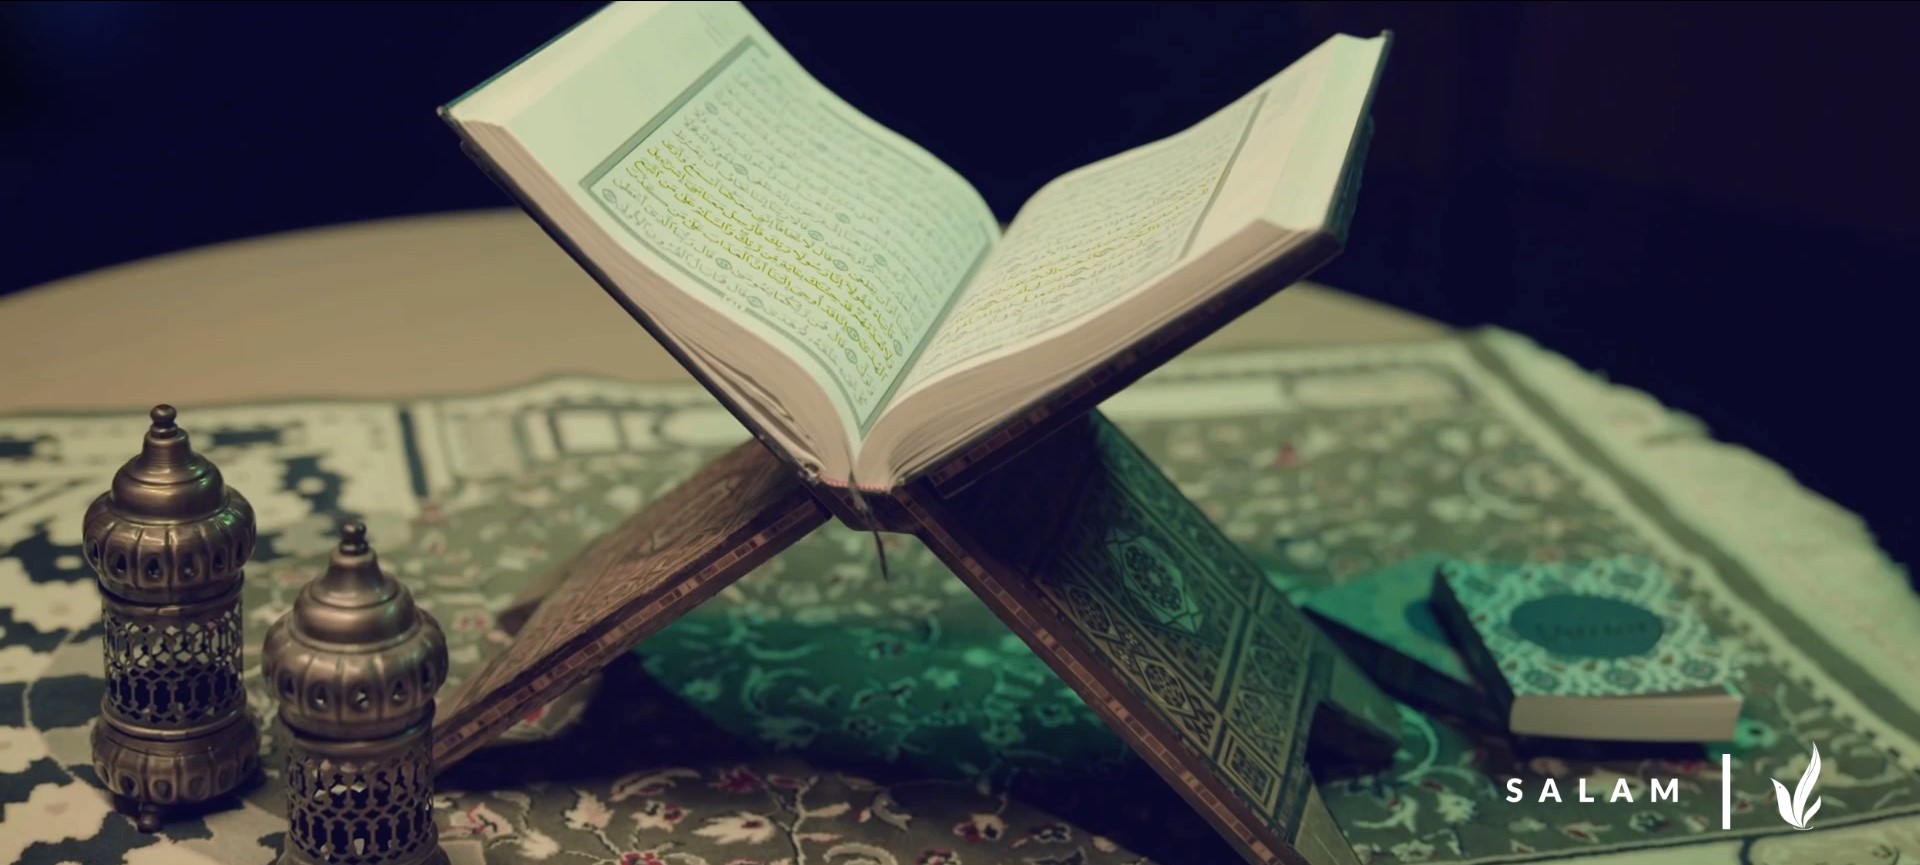 Las Competencias Internacionales del Sagrado Corán 2023